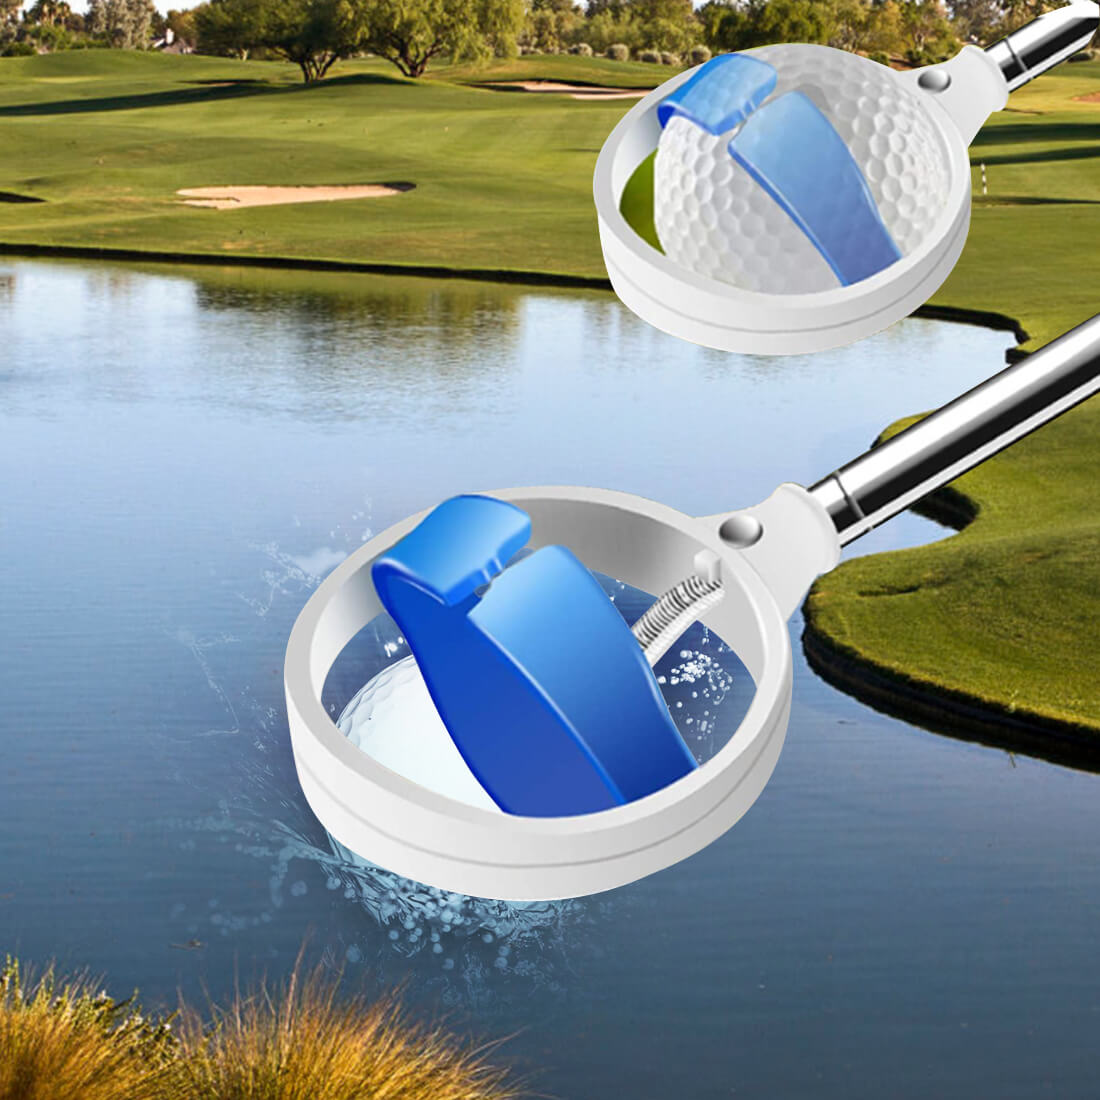 Mazel golf ball water retrievers yellow blue 04